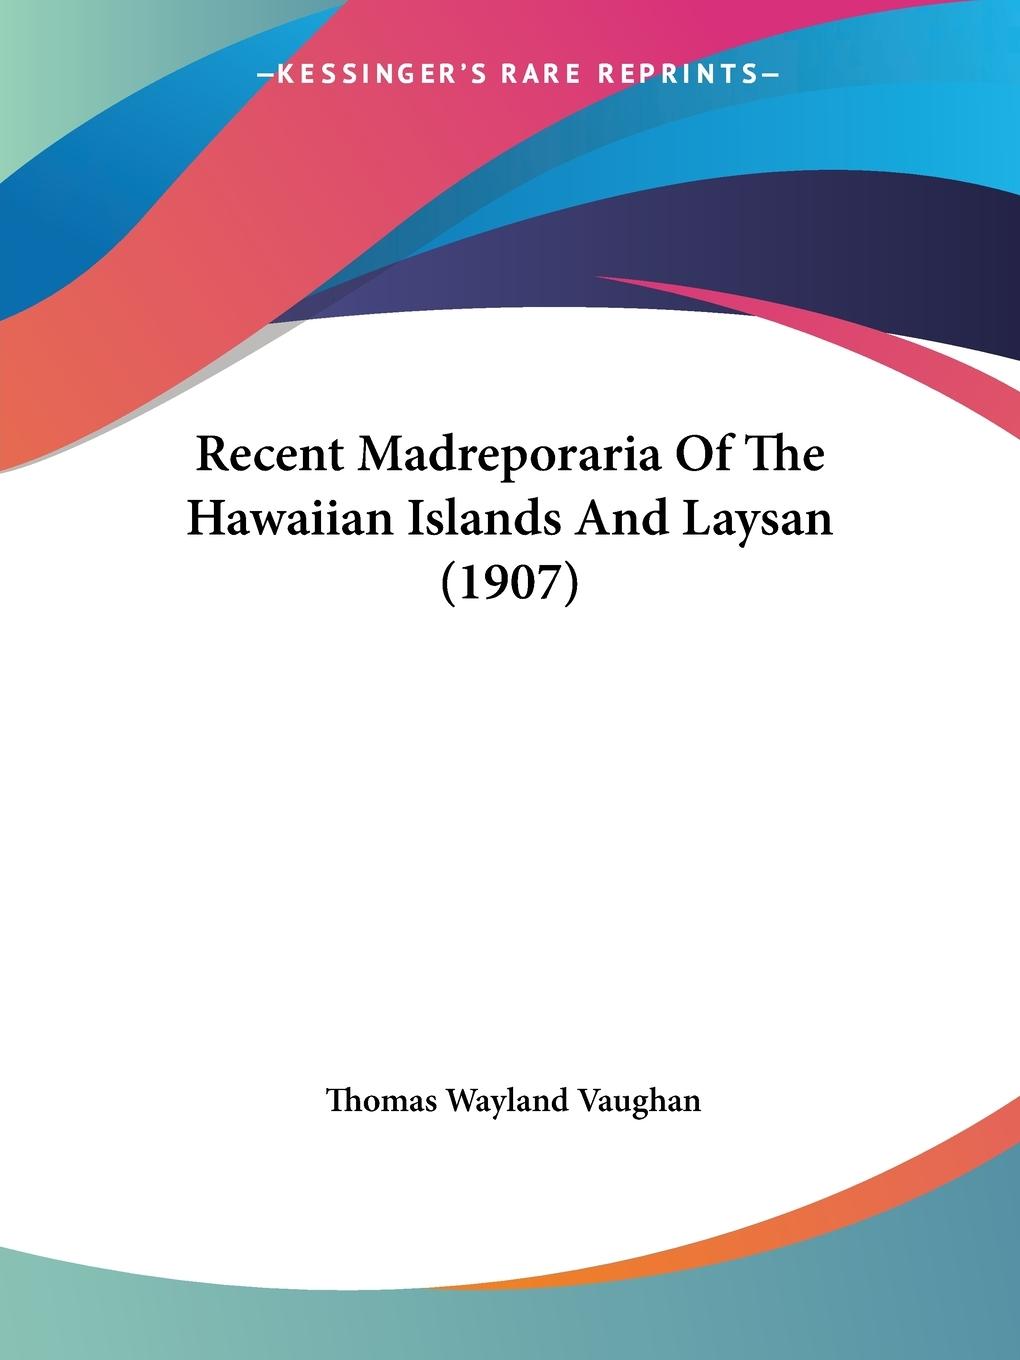 Recent Madreporaria Of The Hawaiian Islands And Laysan (1907) - Vaughan, Thomas Wayland